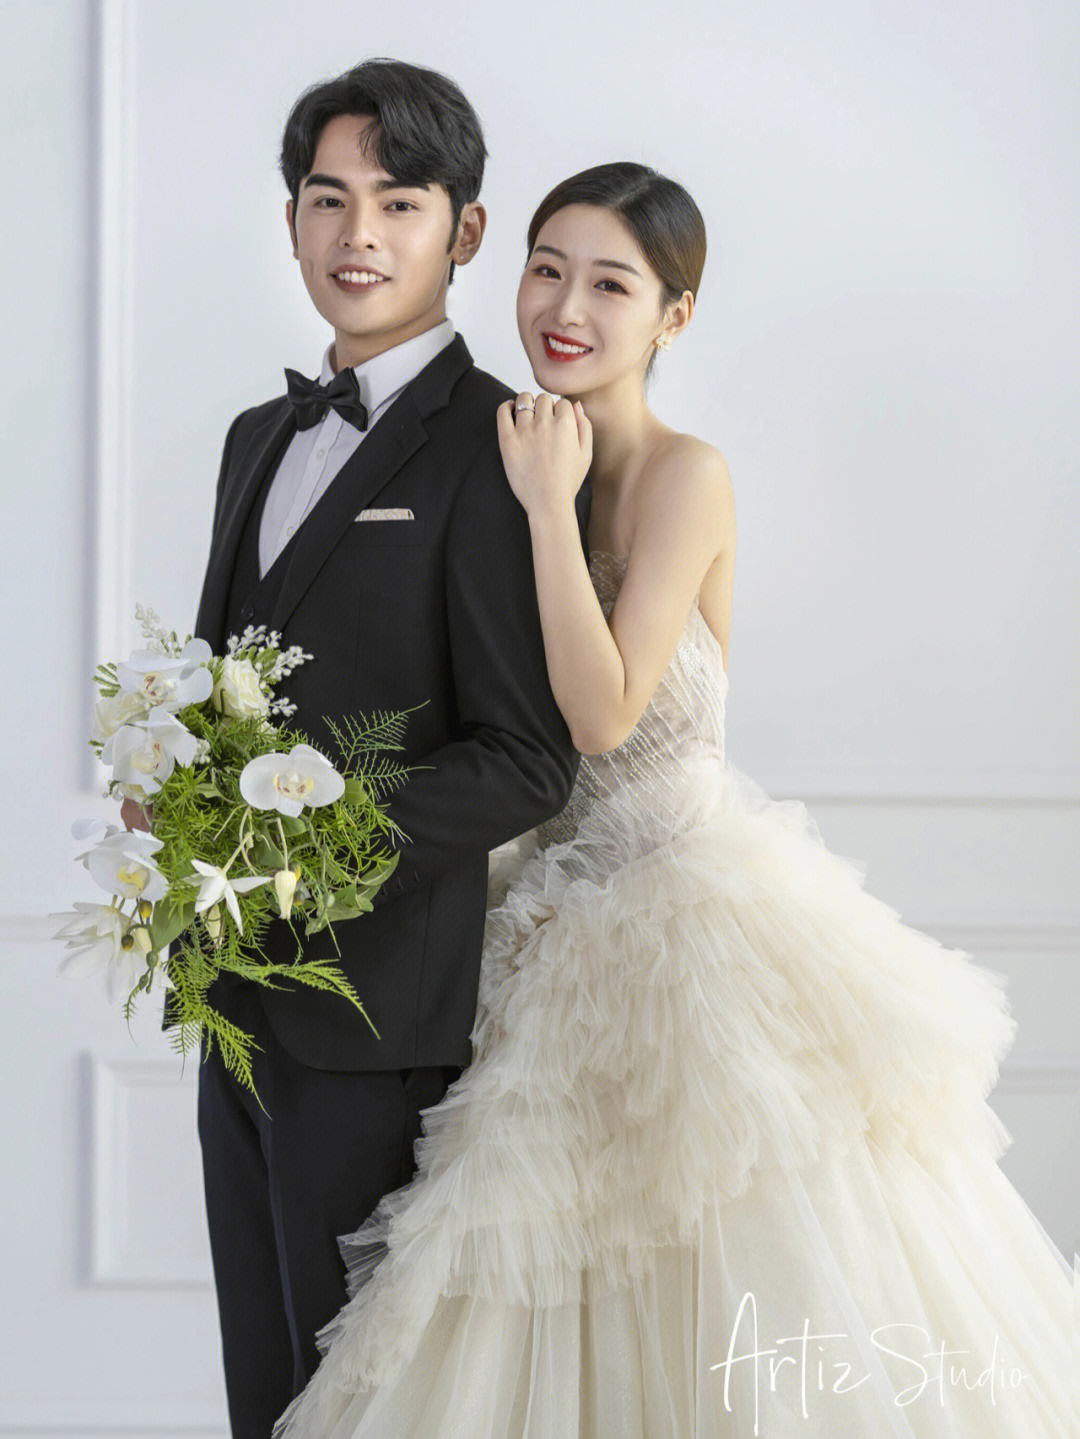 婚纱照十大风格韩式图片